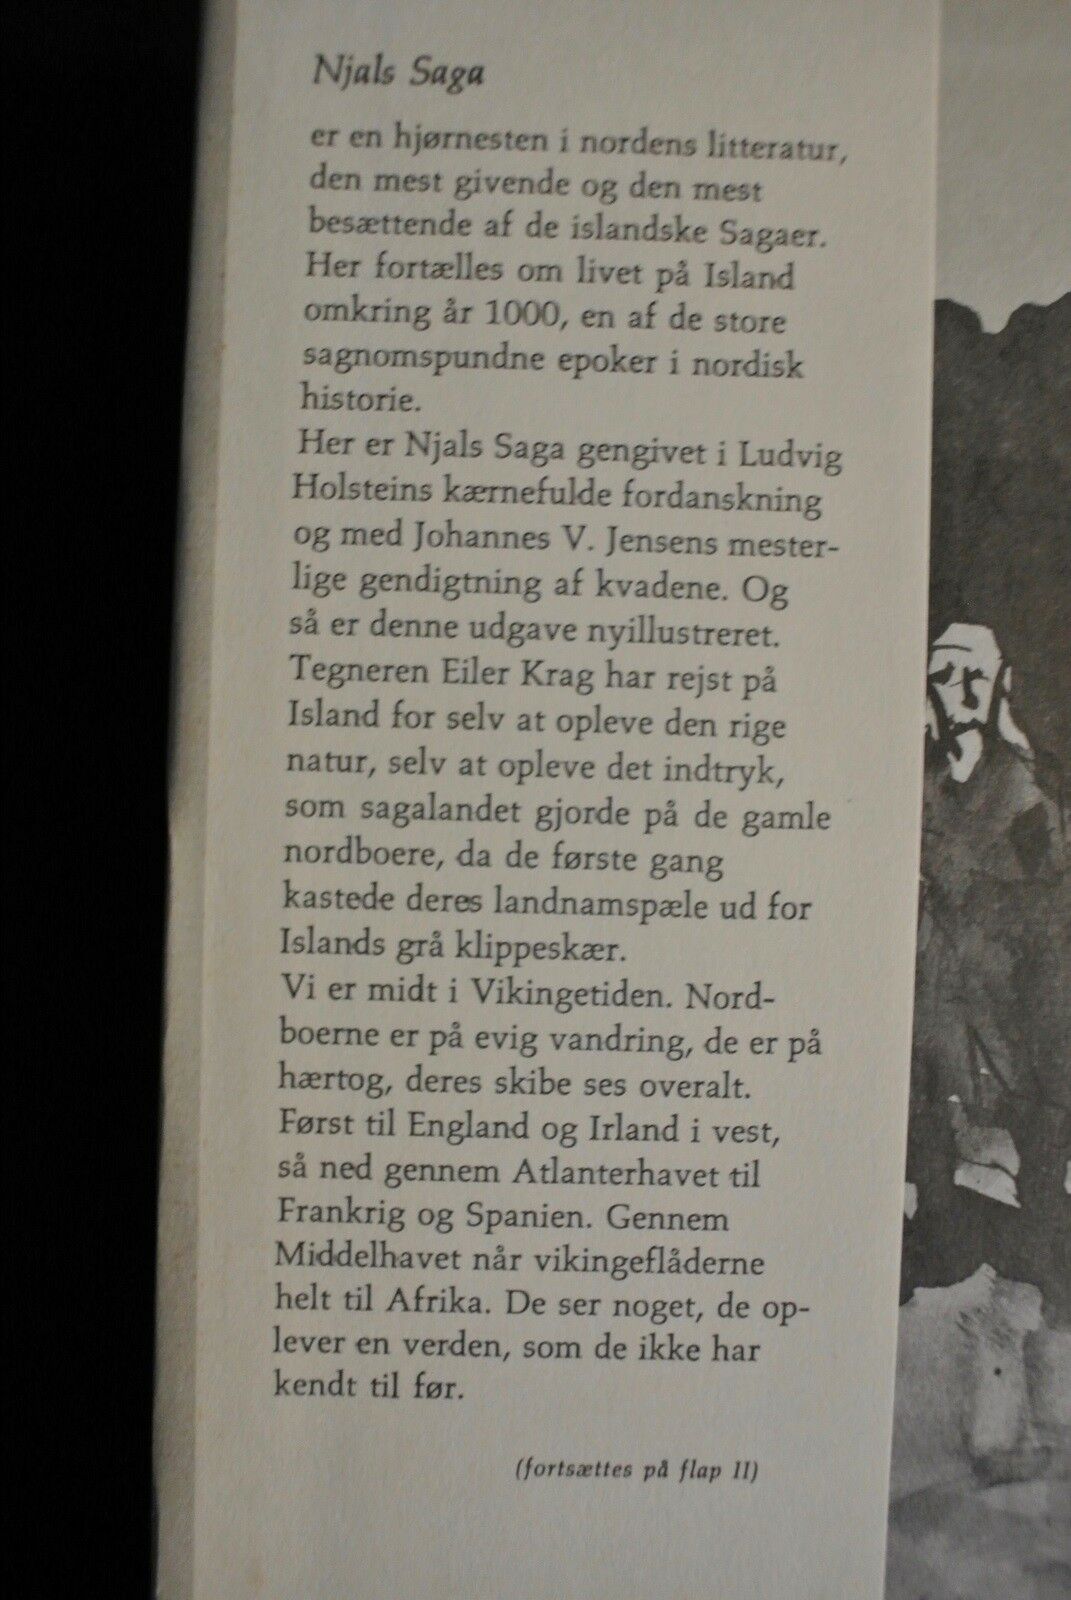 njals saga 1-2, ill. af eiler krag, genre: anden kategori